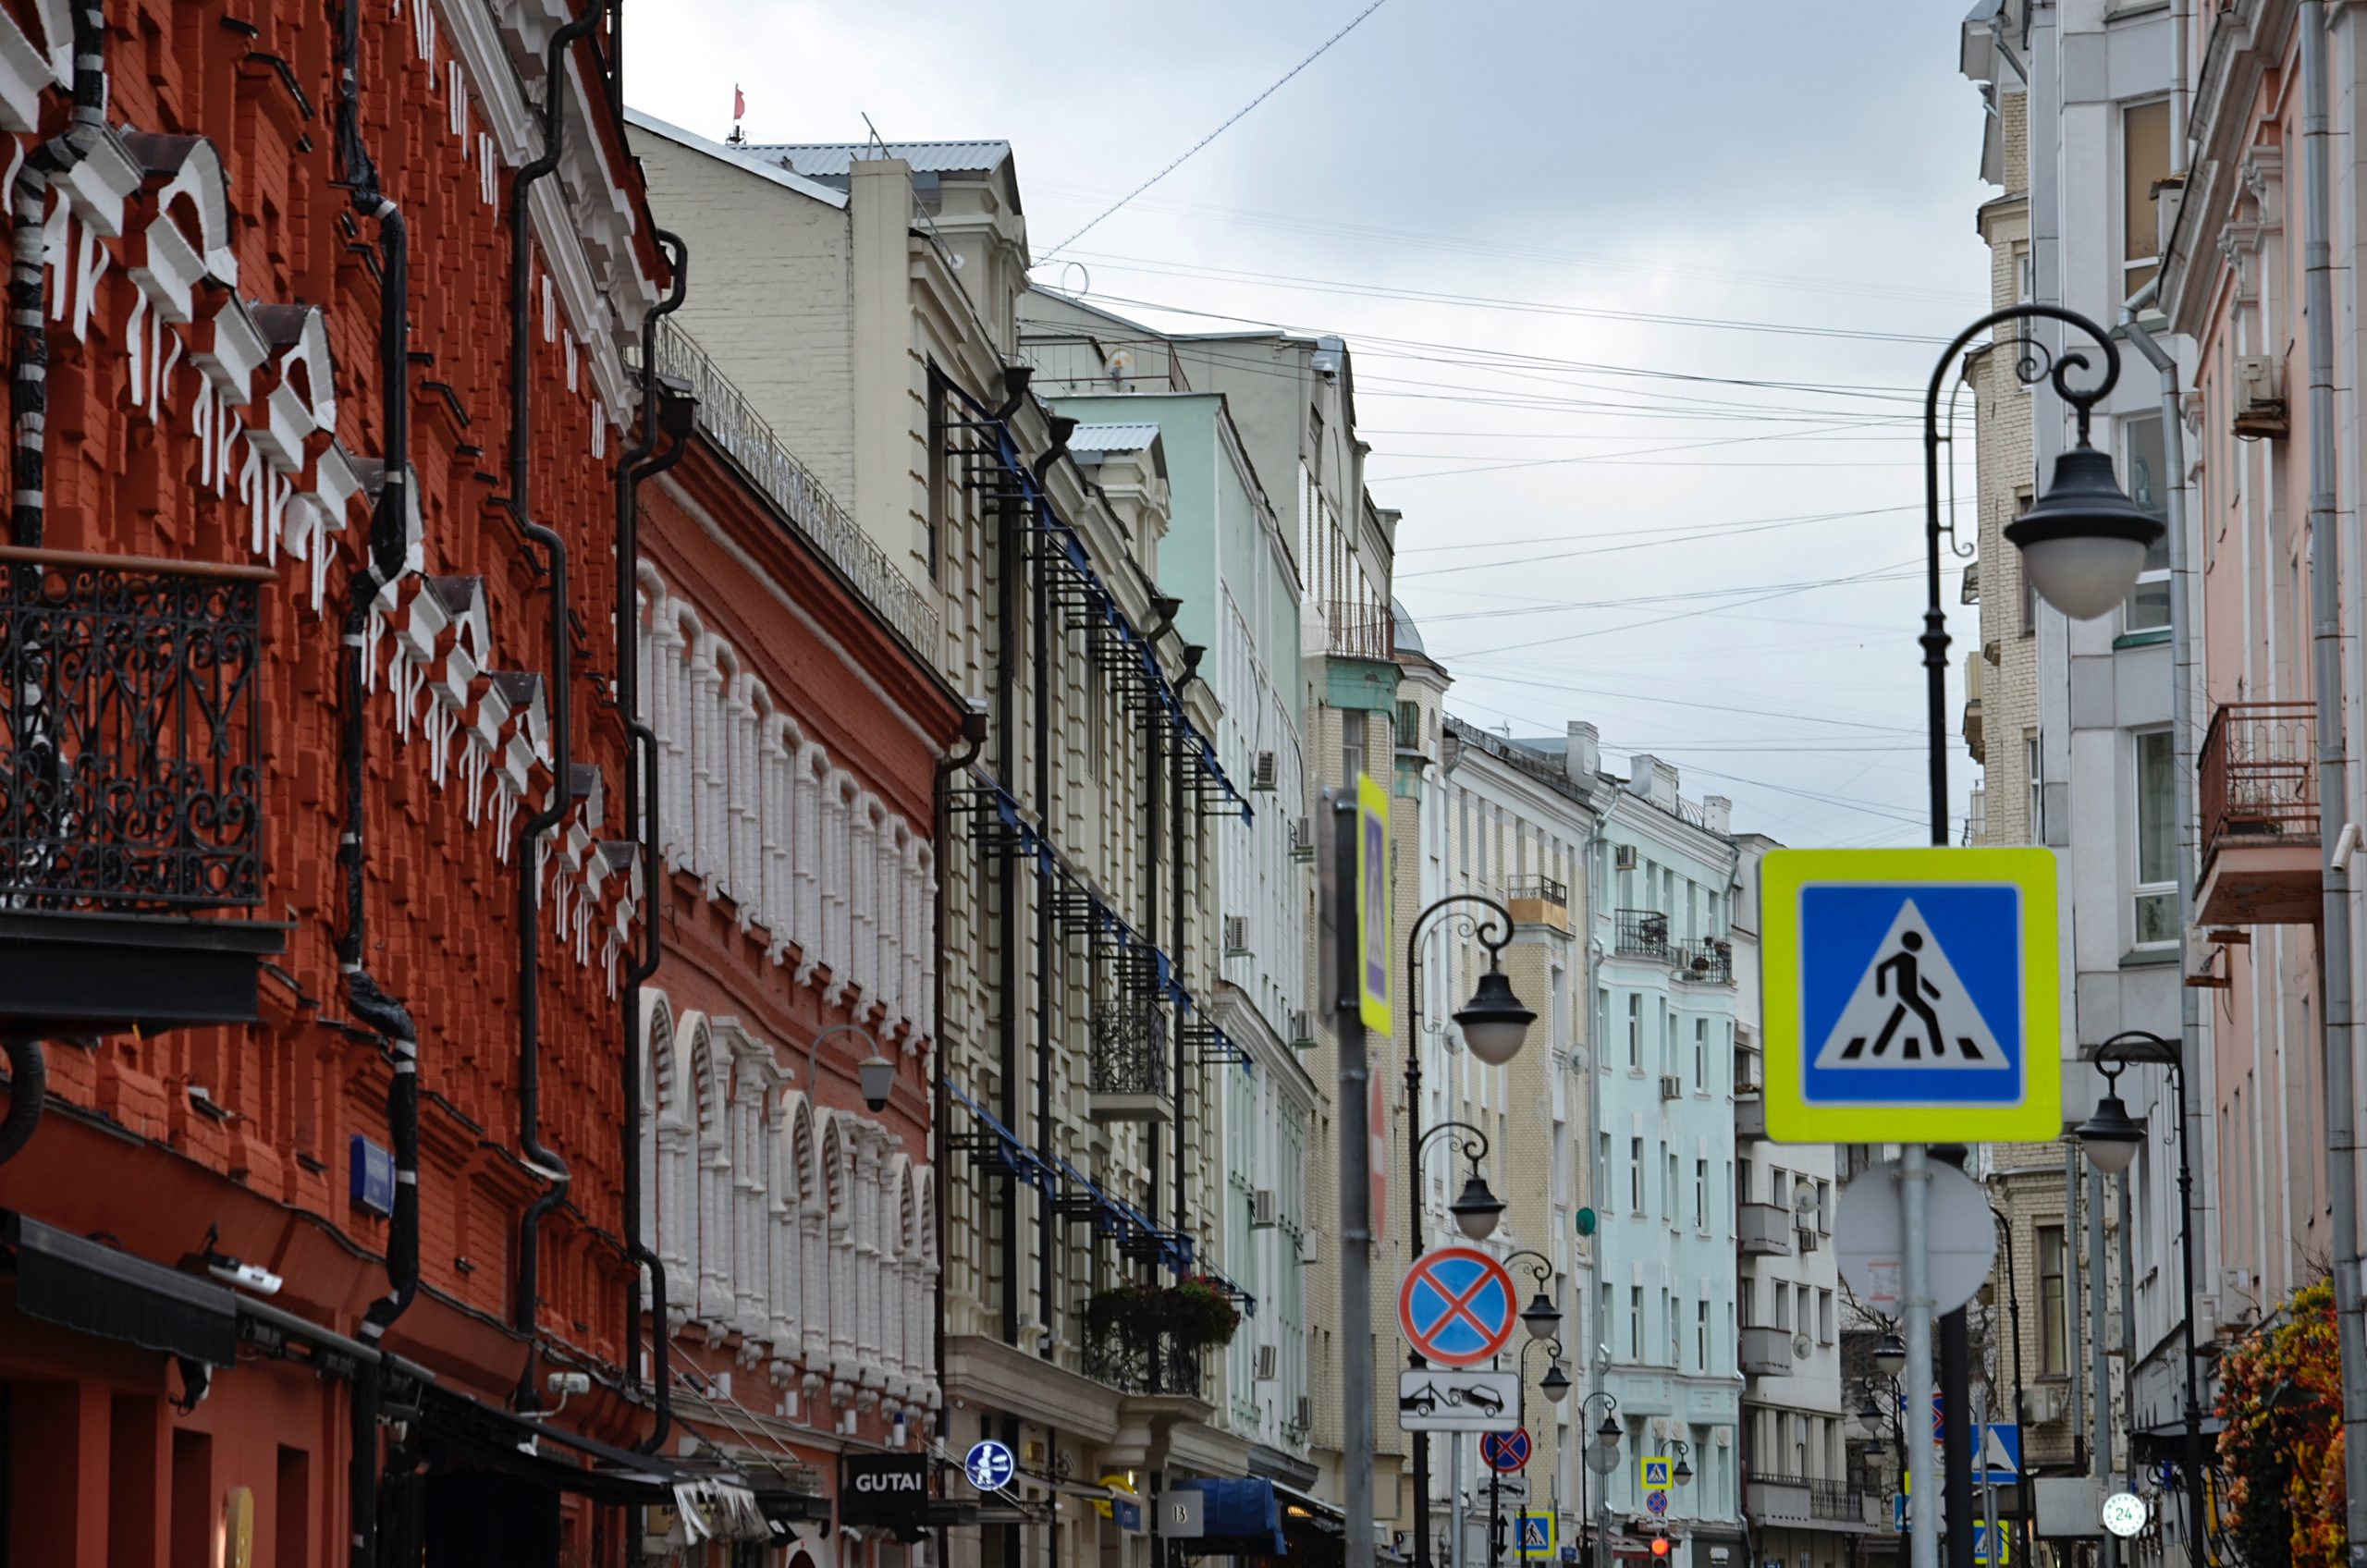 Пешеходные улицы Москвы